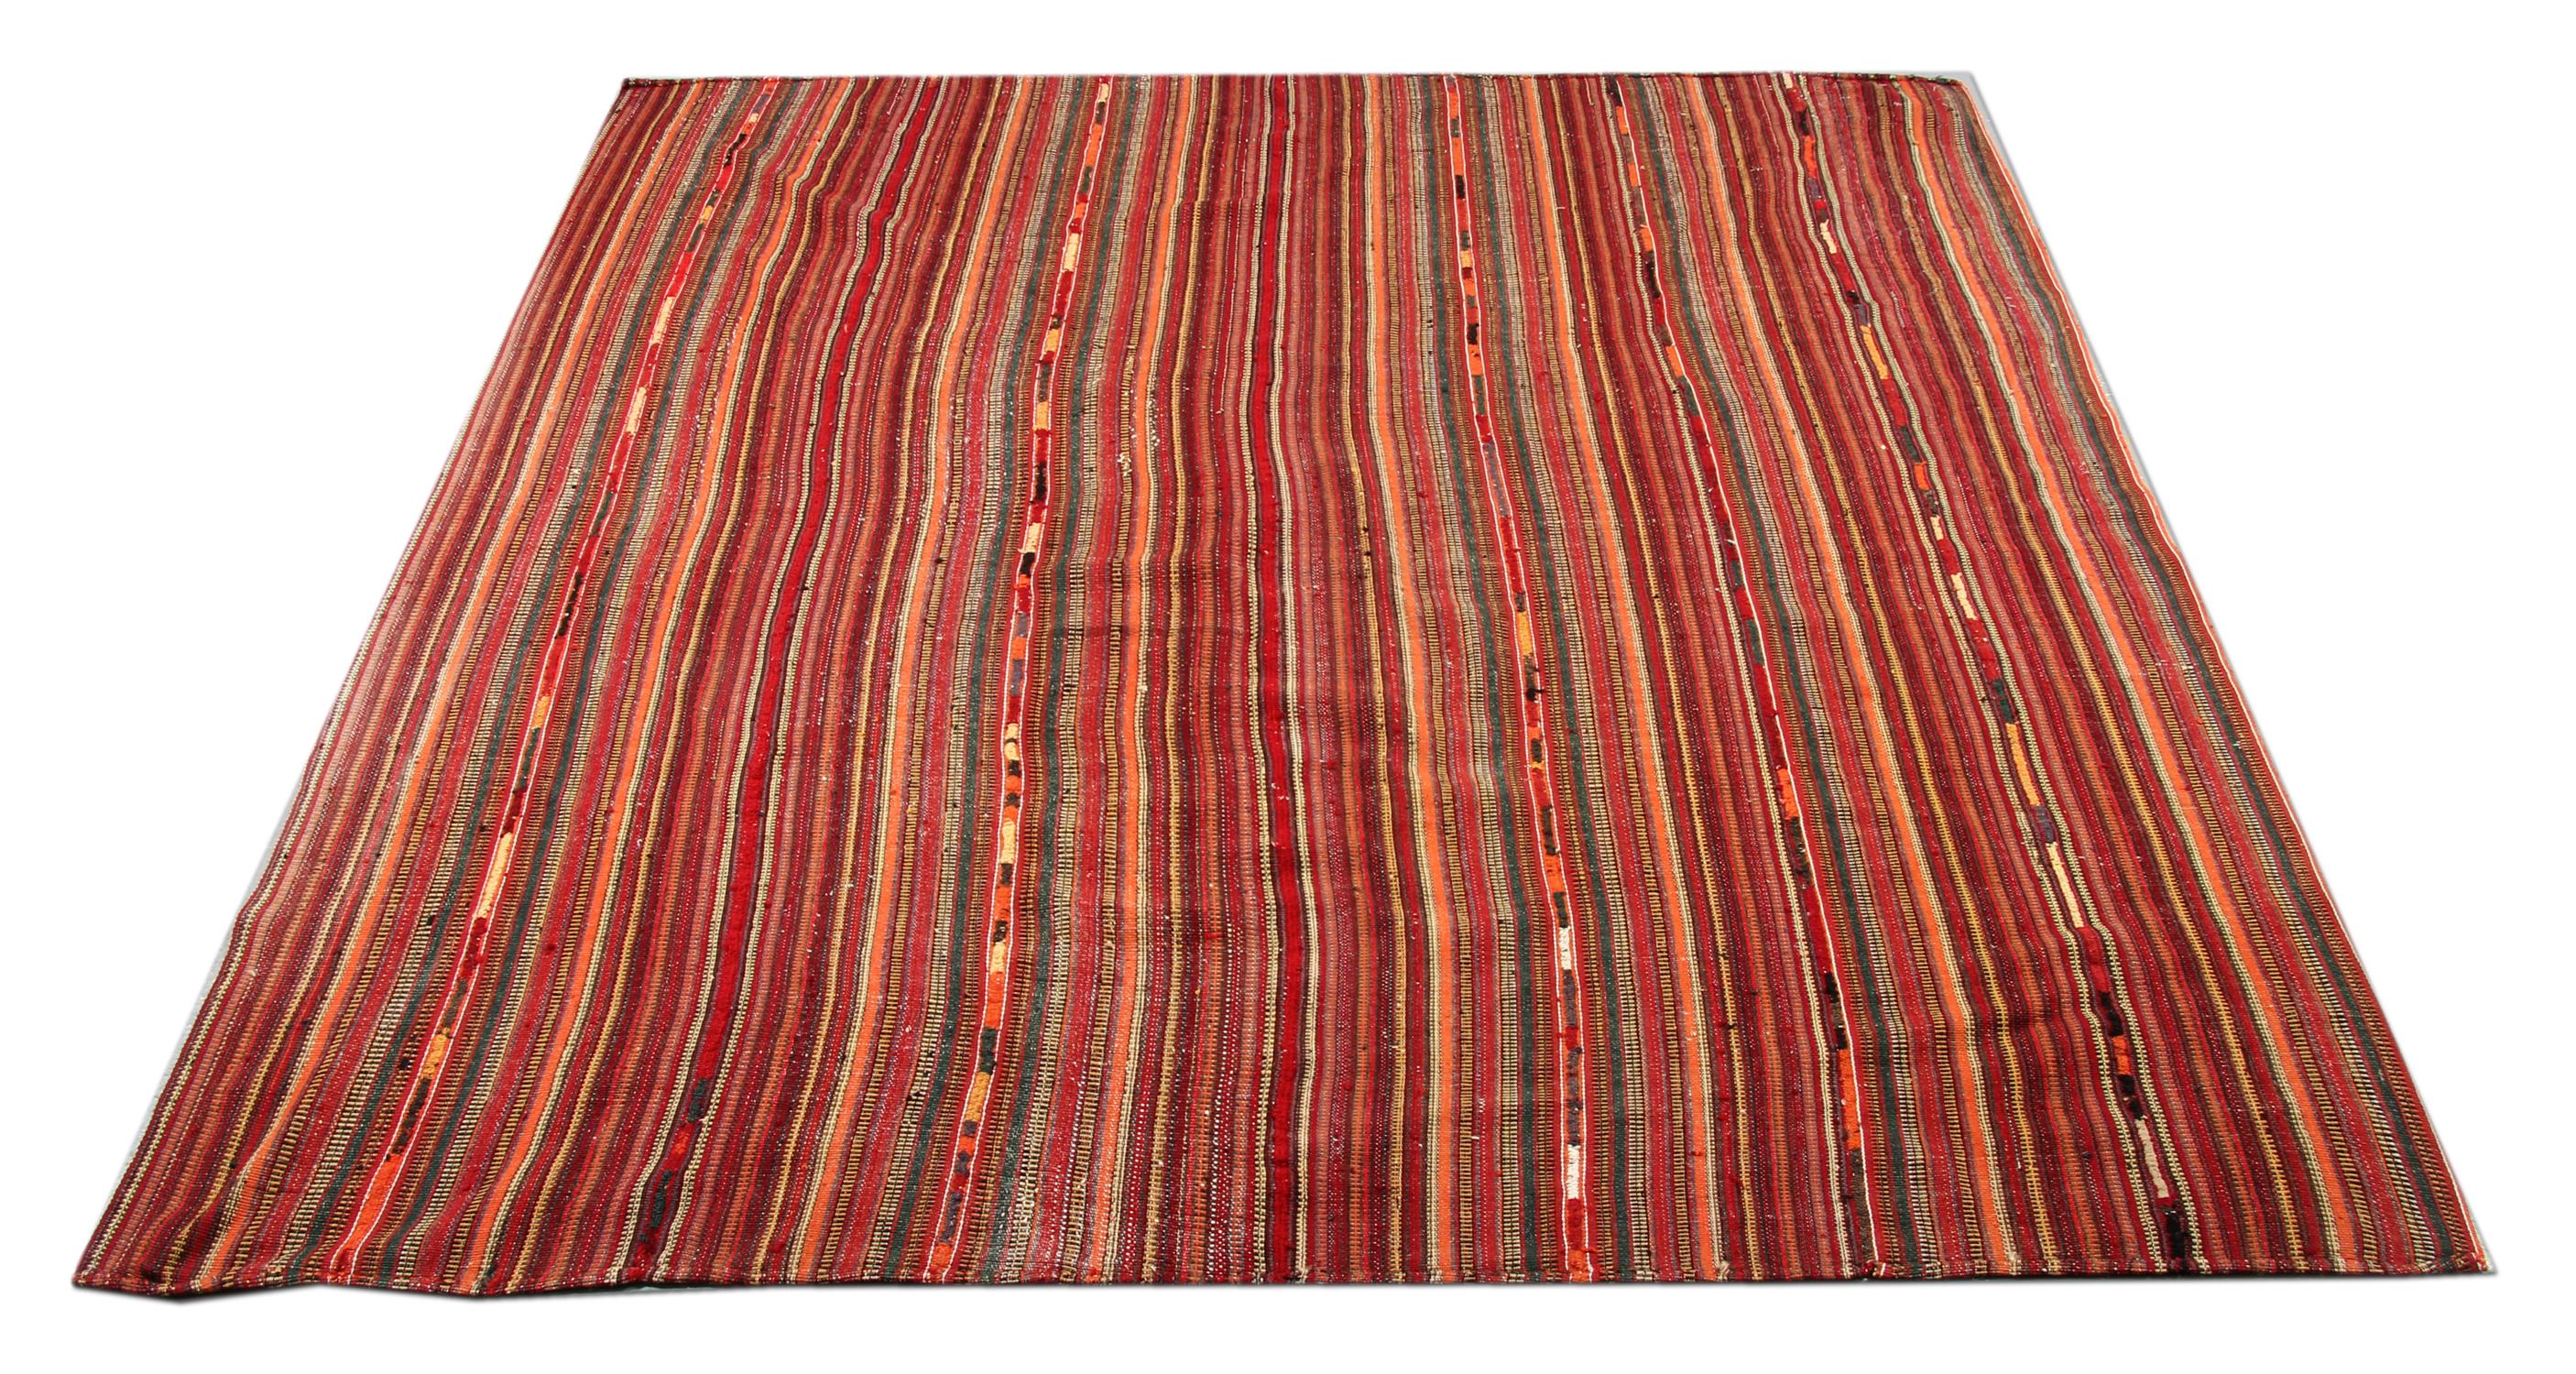 Rot, Elfenbein, Orange und Schwarz sind die Hauptfarben dieses eleganten Jajim-Textils. Von Hand gewebt, mit einfachem Streifenmuster. Sowohl die Farbe als auch das Design werten jede Inneneinrichtung sofort auf. Hergestellt aus feiner,